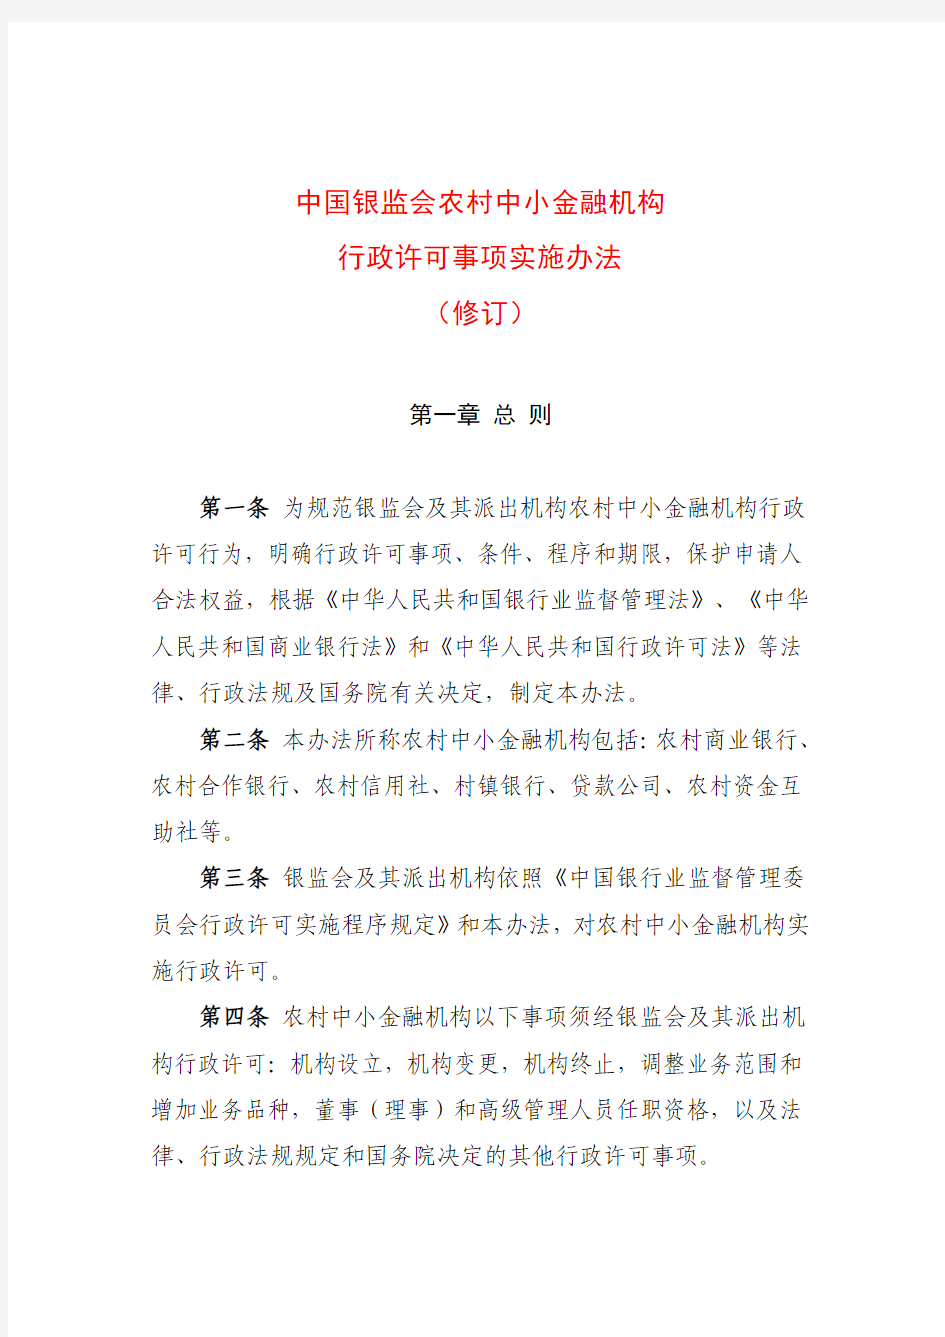 2015年6月5日中国银监会农村中小金融机构行政许可事项实施办法